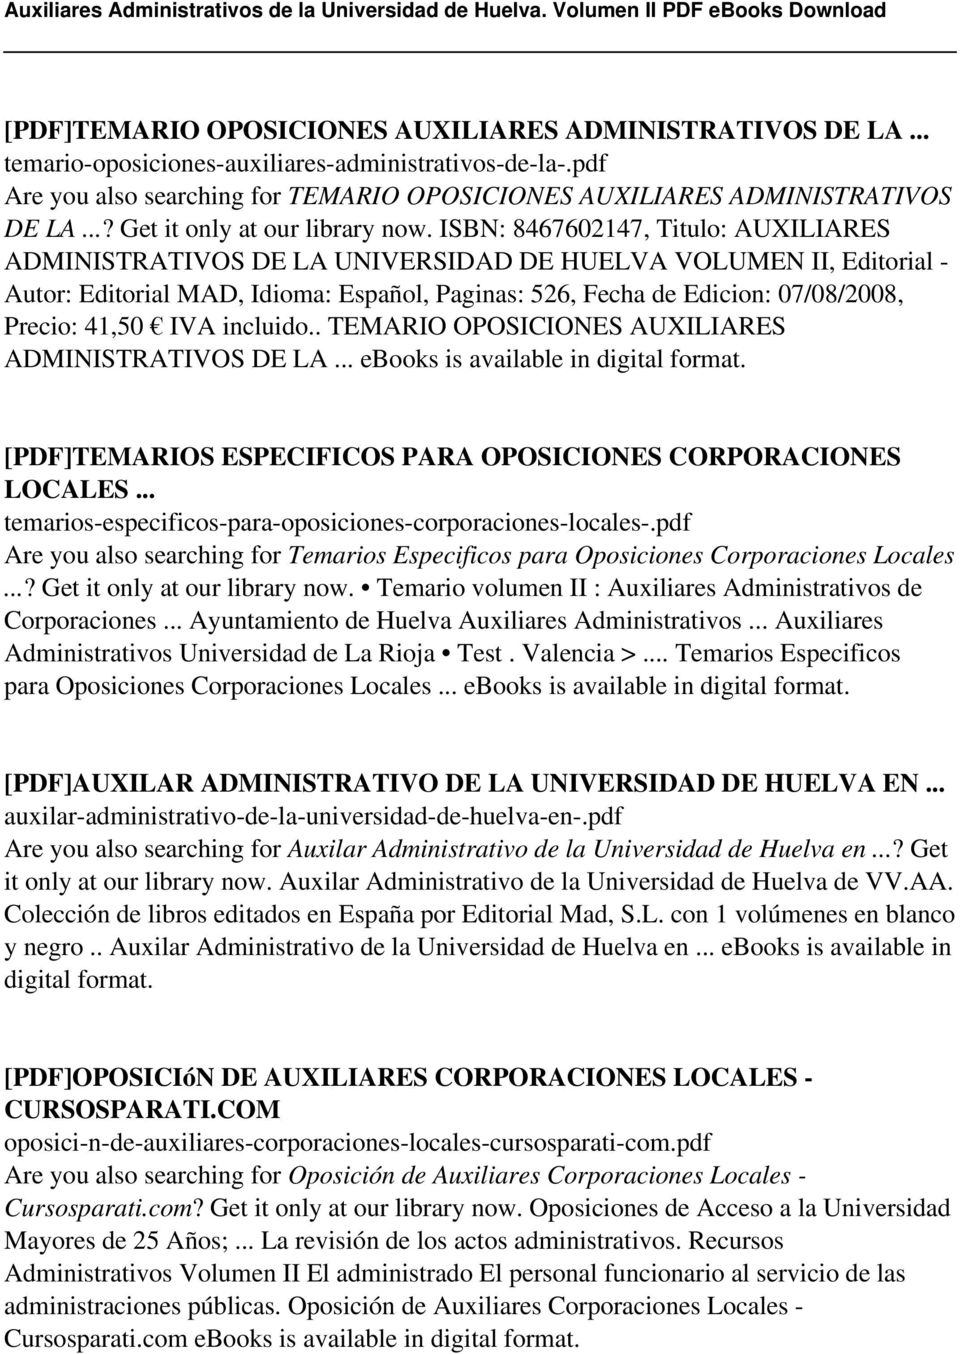 ISBN: 8467602147, Titulo: AUXILIARES ADMINISTRATIVOS DE LA UNIVERSIDAD DE HUELVA VOLUMEN II, Editorial - Autor: Editorial MAD, Idioma: Español, Paginas: 526, Fecha de Edicion: 07/08/2008, Precio: